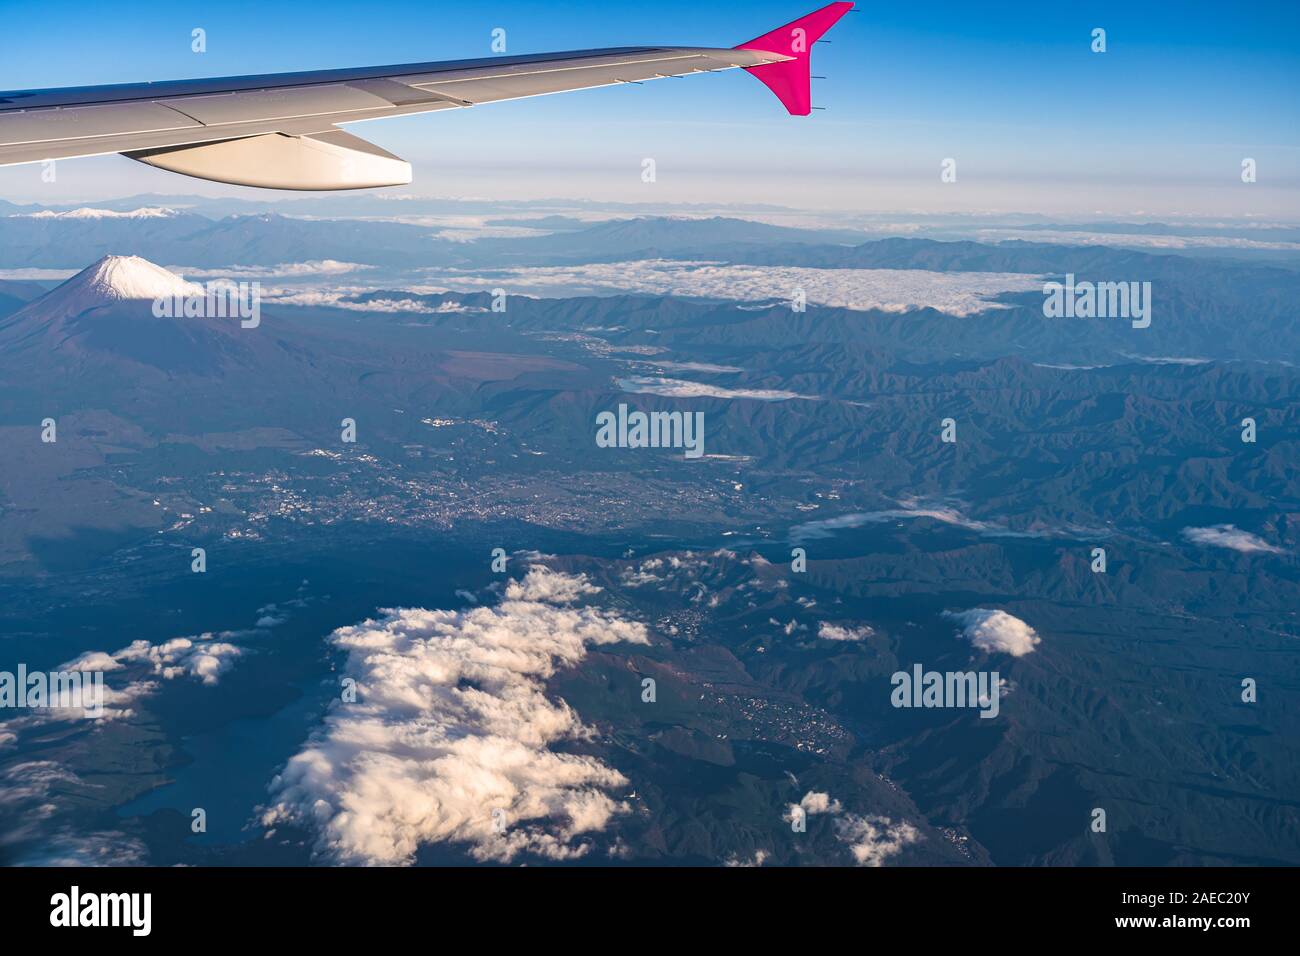 Luftaufnahme von flugzeugflügel mit Mount Fuji (Mt. Fuji) im Hintergrund und blauen Himmel. Landschaft Landschaften des Fuji-Hakone-Izu Nationalpark. Gotemba Stockfoto